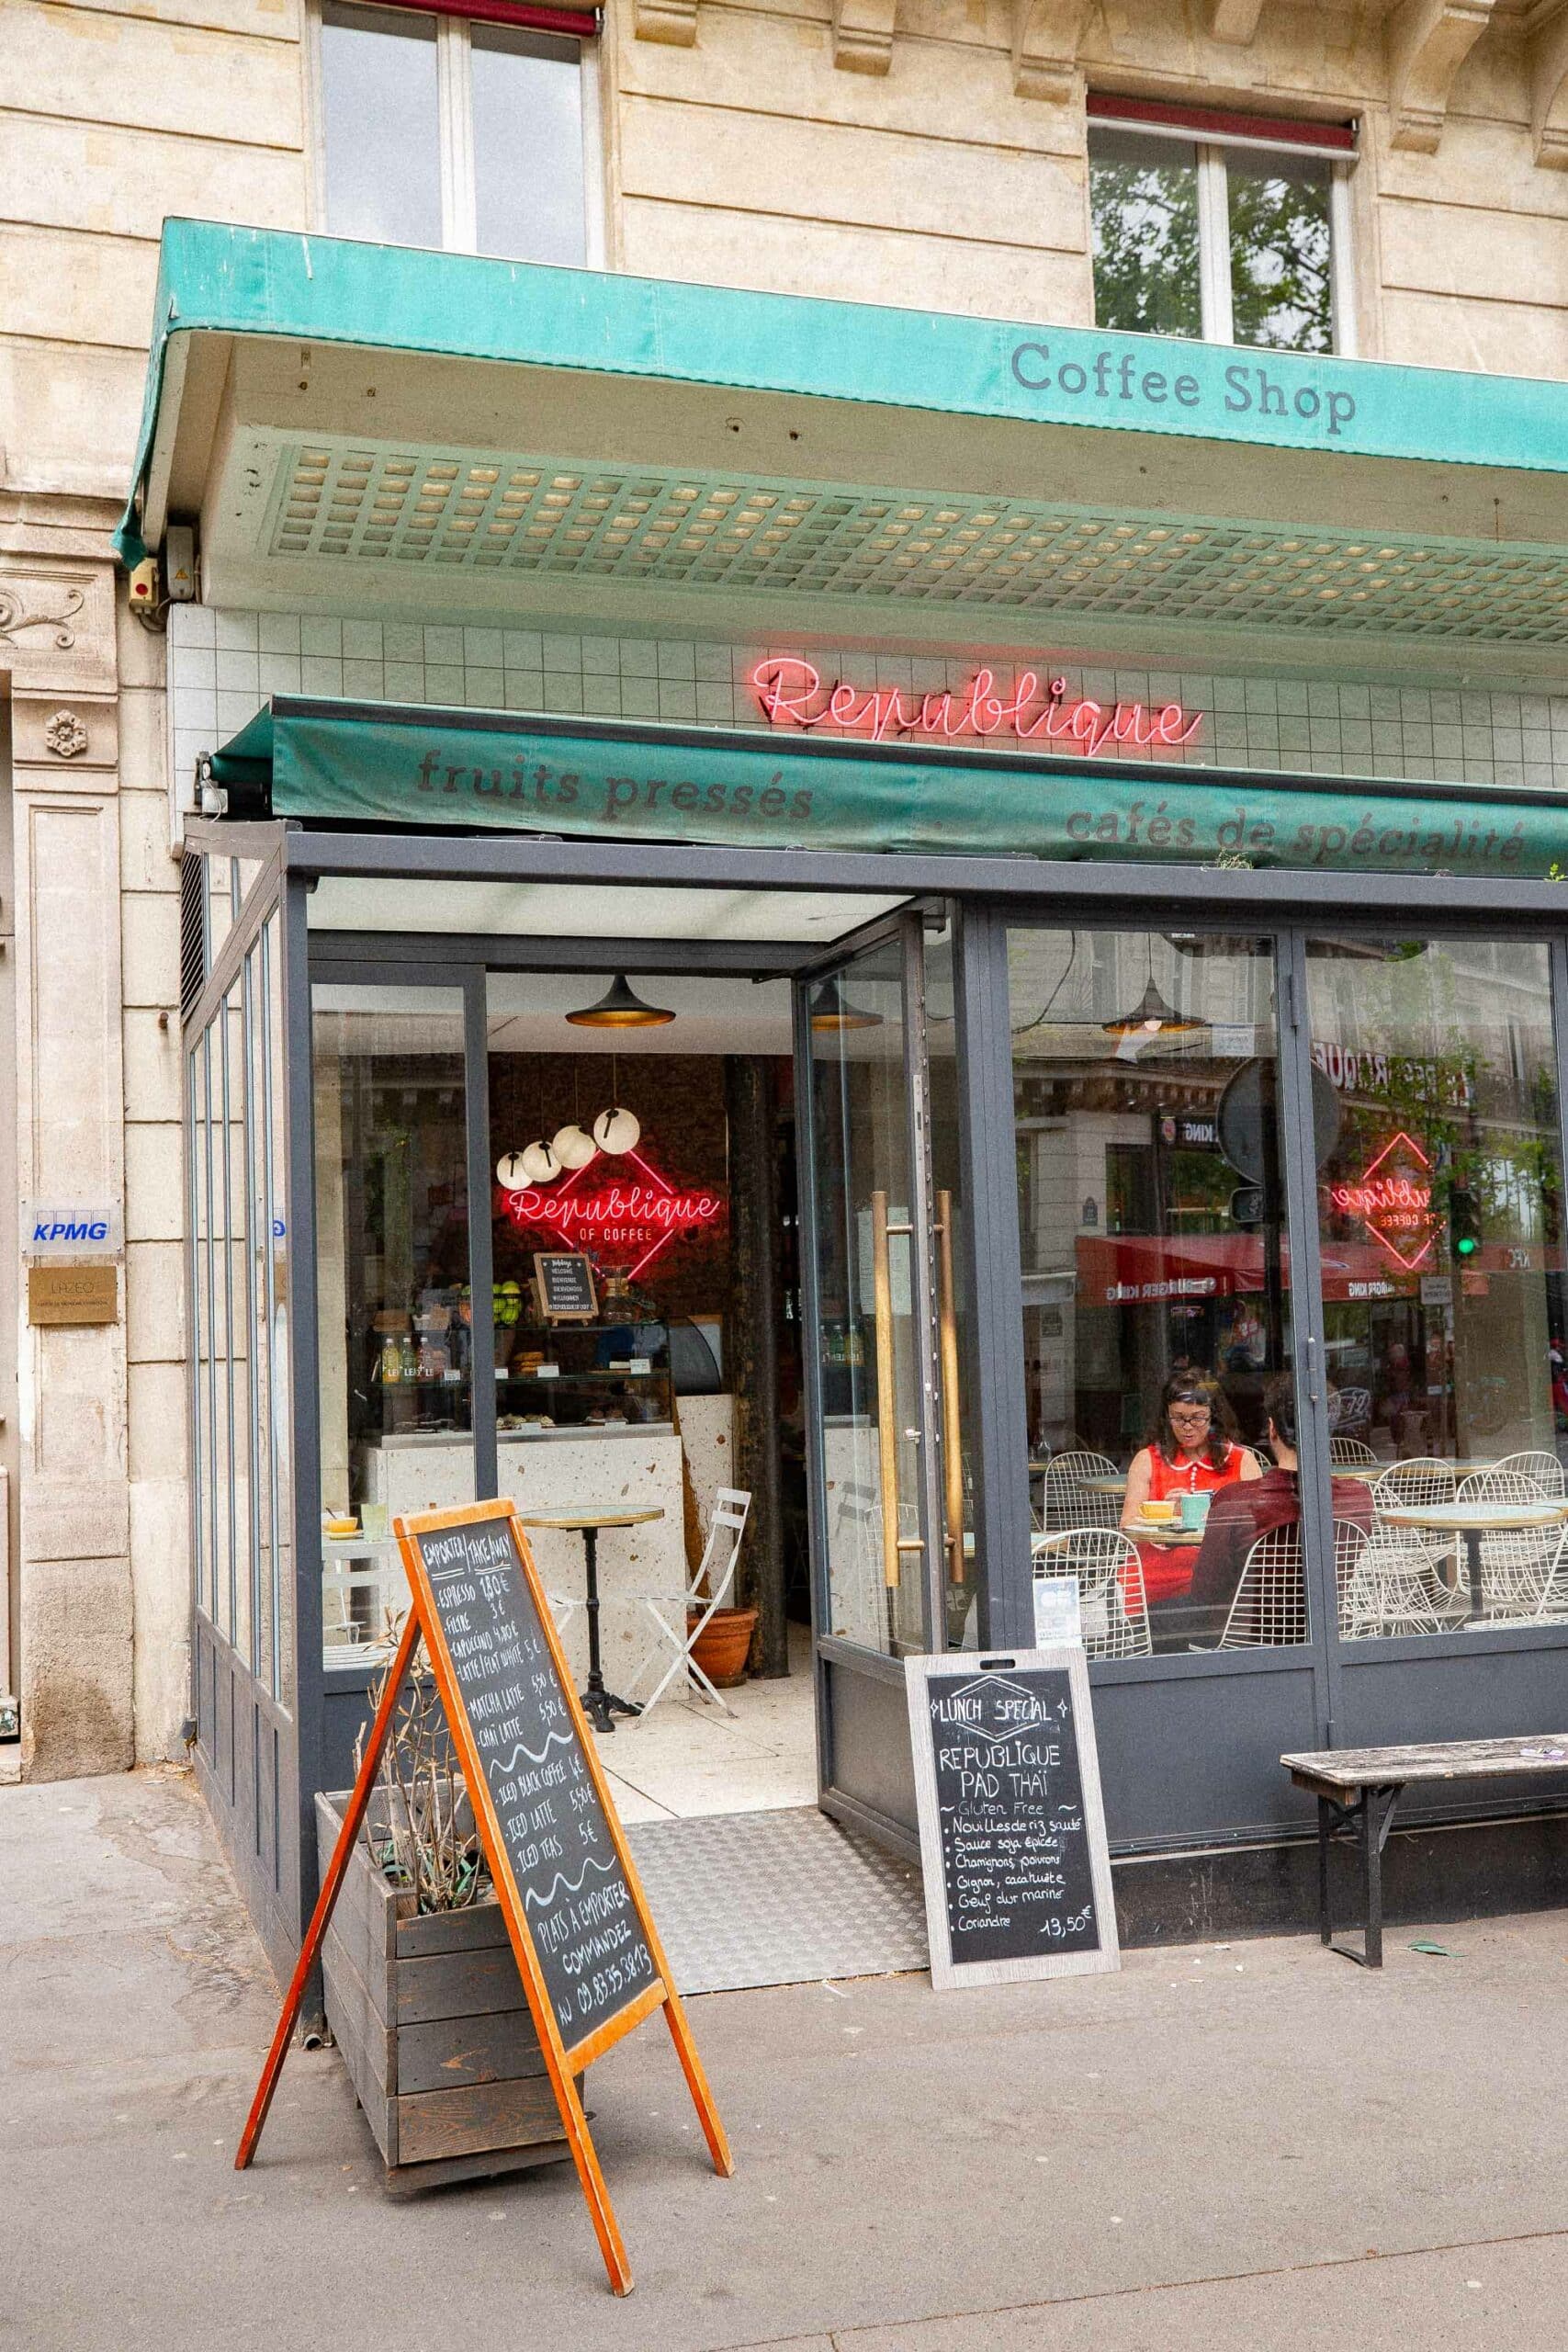 Best coffee shops in Paris
République cafe Paris